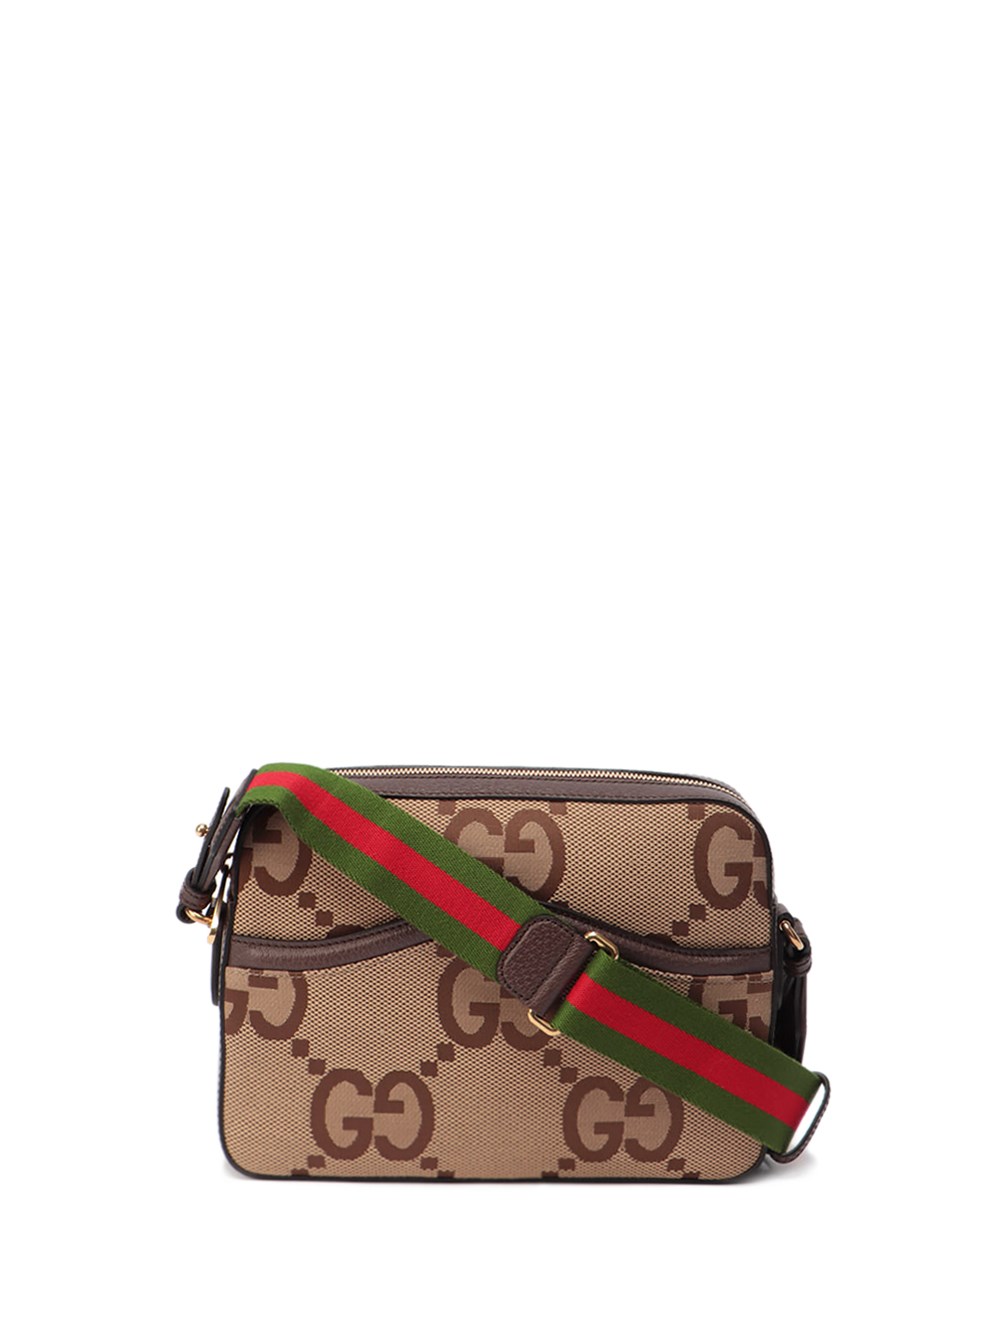 Gucci Jumbo GG messenger bag